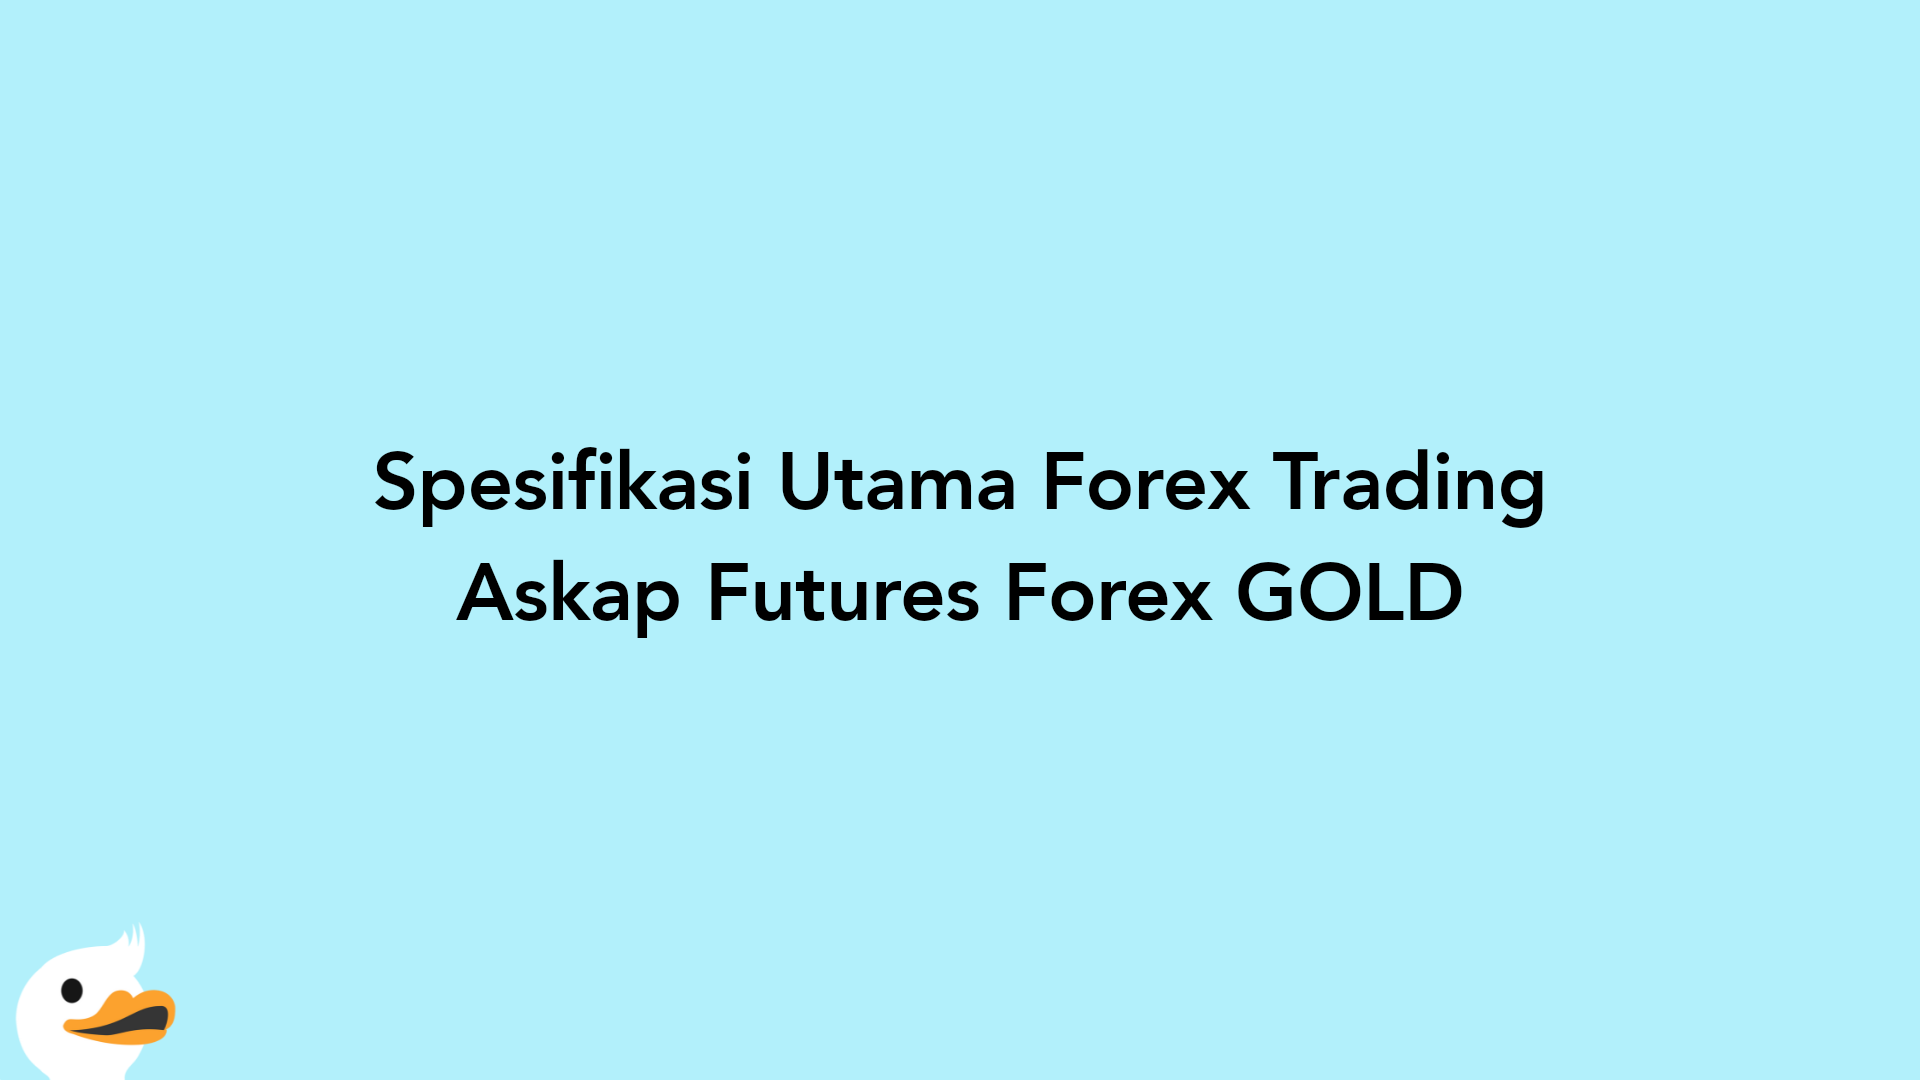 Spesifikasi Utama Forex Trading Askap Futures Forex GOLD